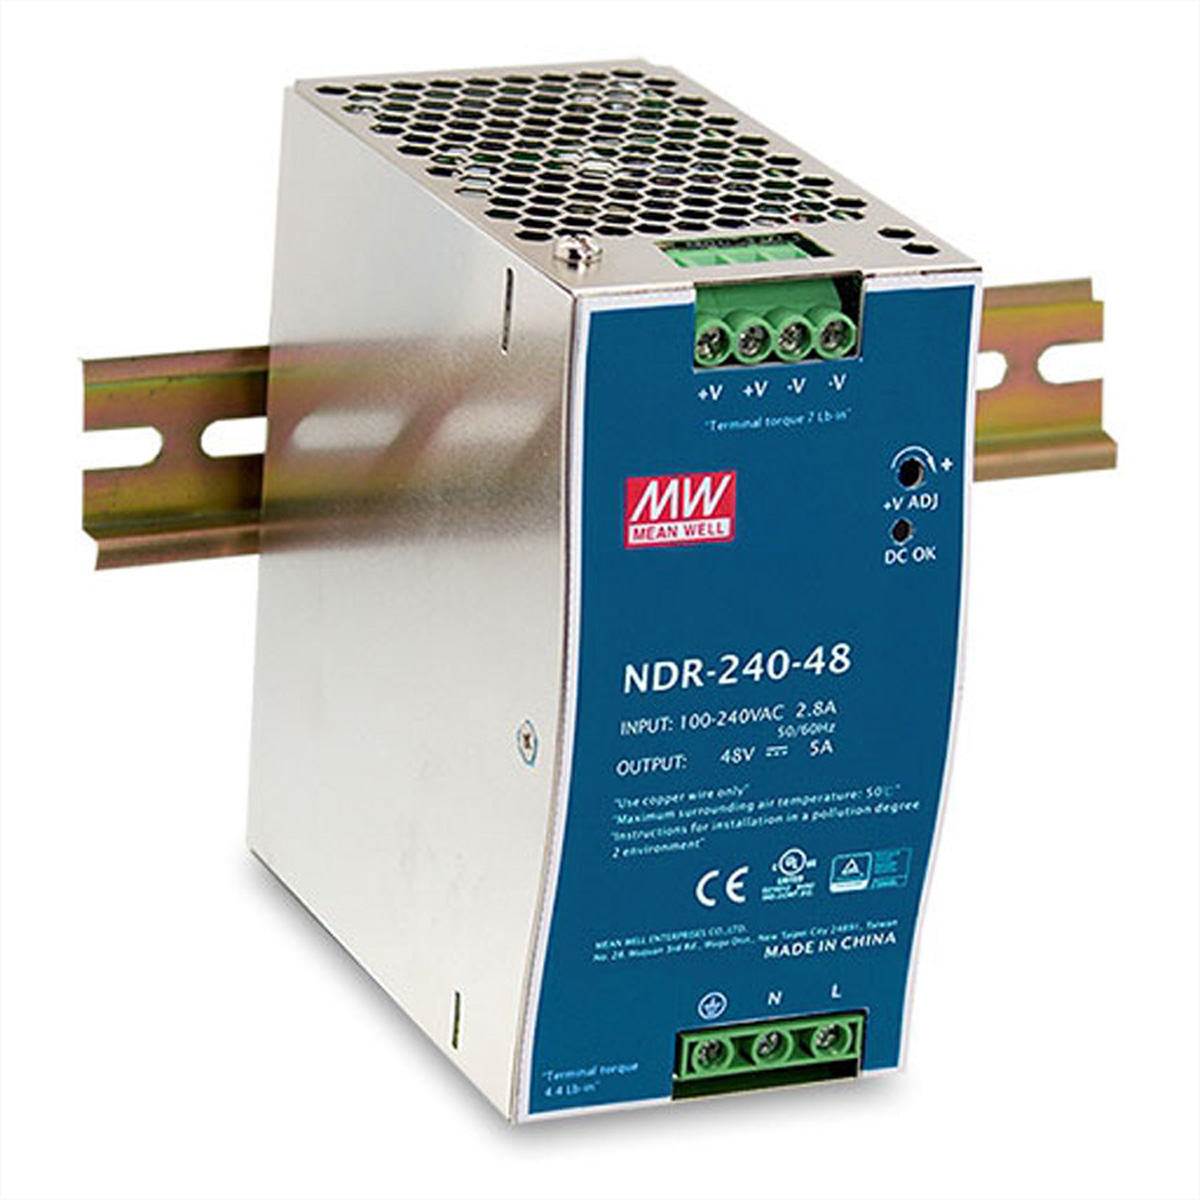 D-LINK DIS-N480-48 Industrial Netzteil 480W Watt externes DIN 480 Netzteil Rail